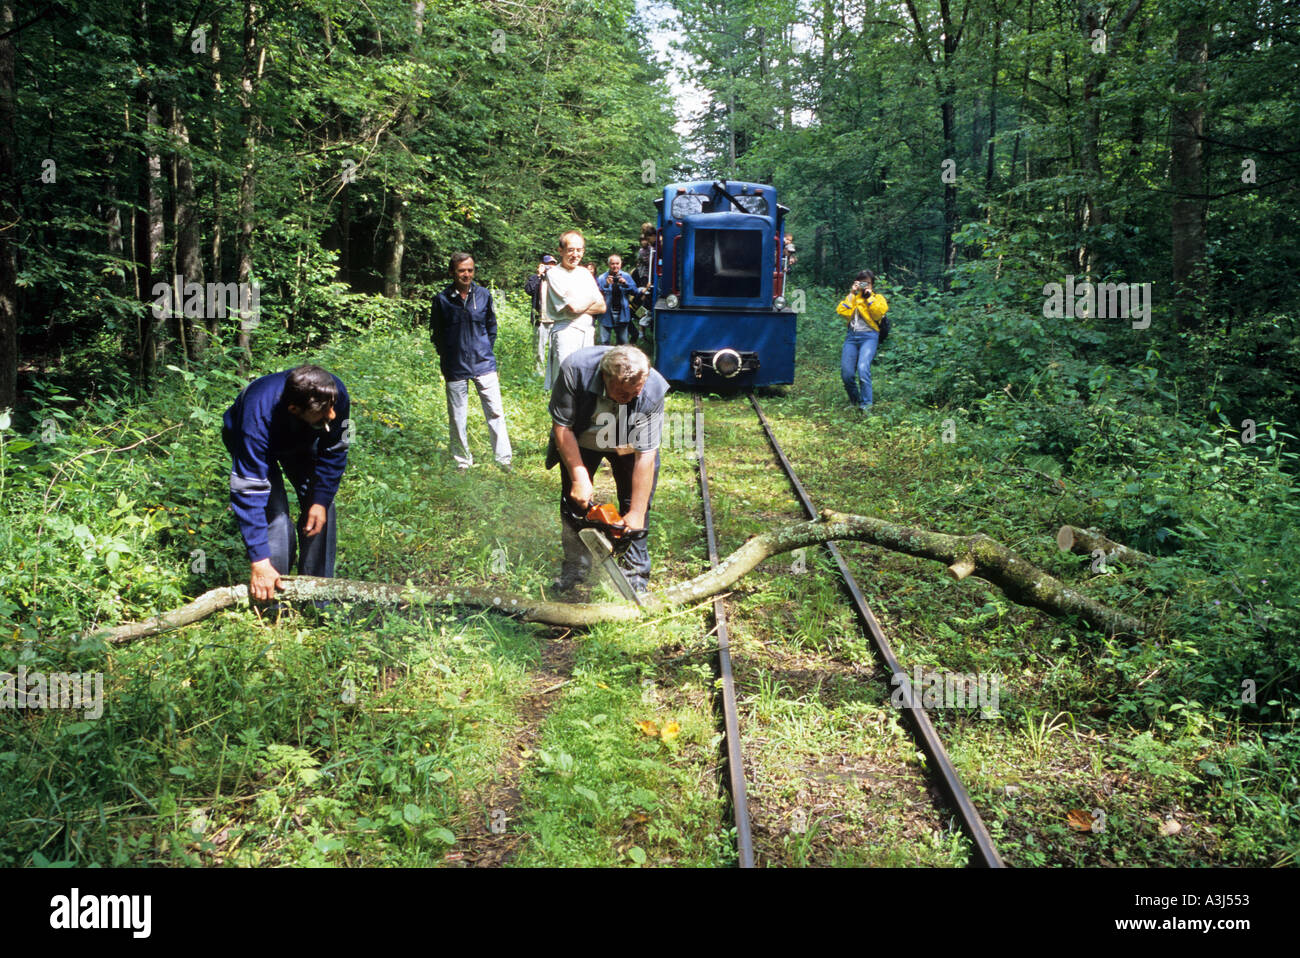 Poland Europe Bialowieski wilderness tiny train blocked by fallen tree branch Stock Photo